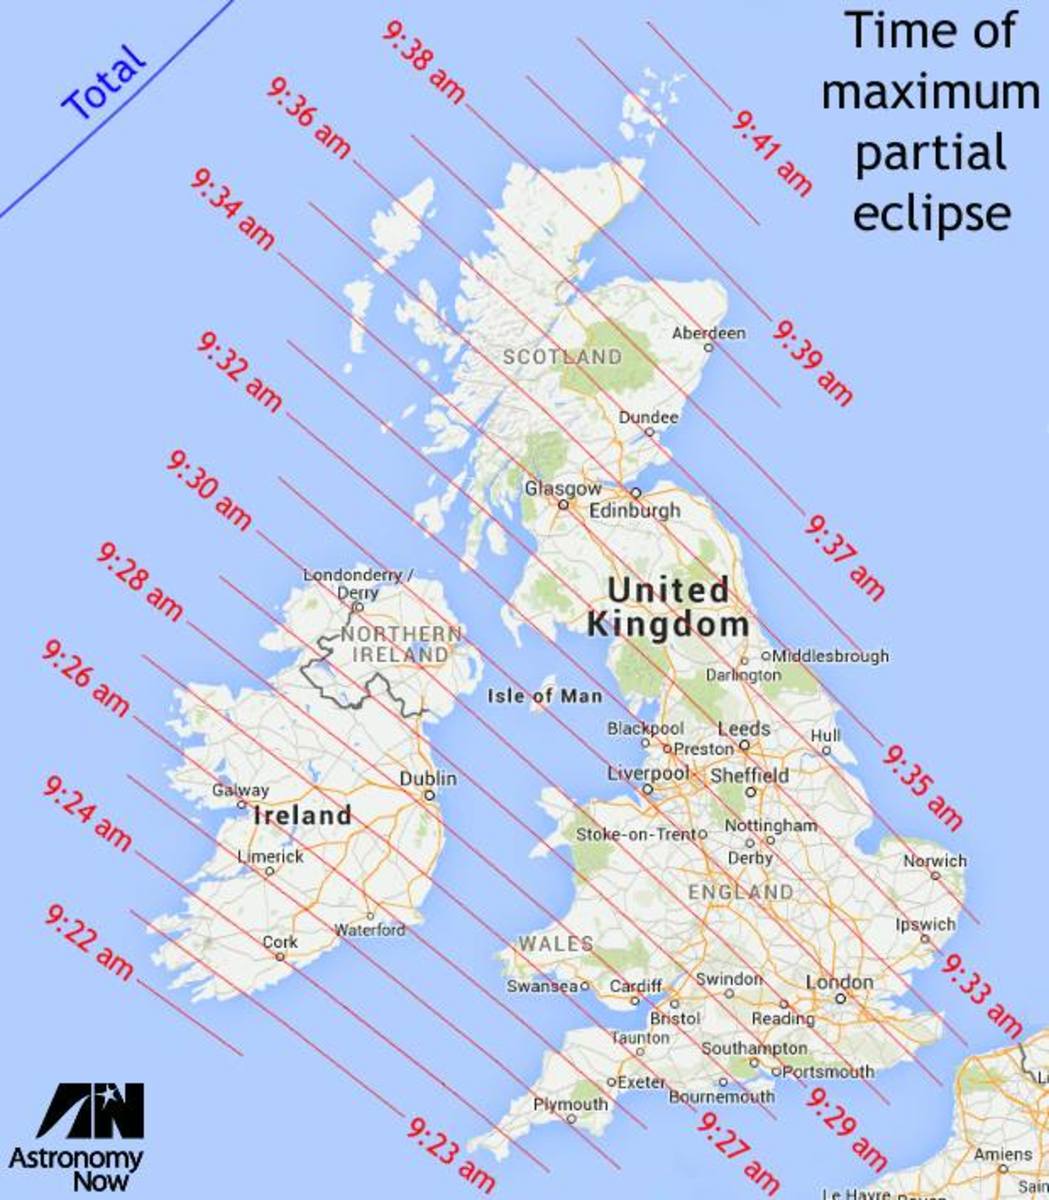 Time of maximum partial eclipse